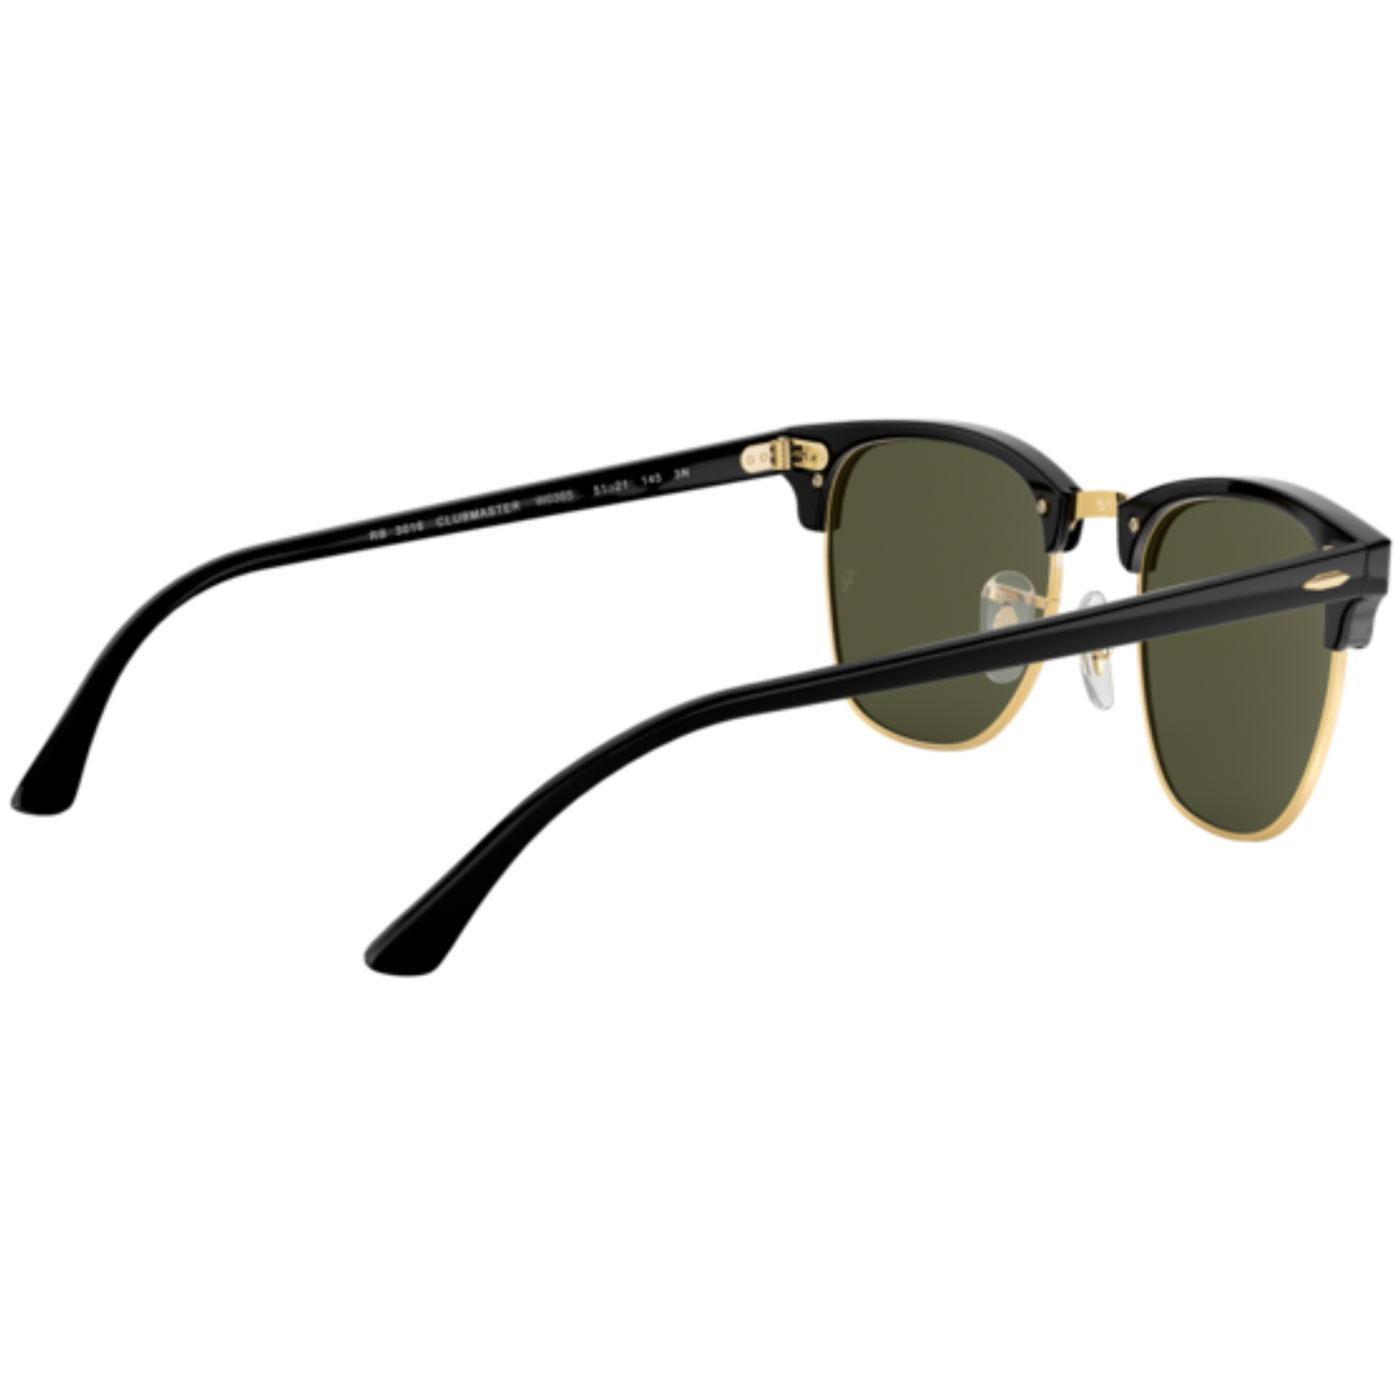 Ray-Ban Clubmaster Retro 50s Mod Icon Sunglasses in Black